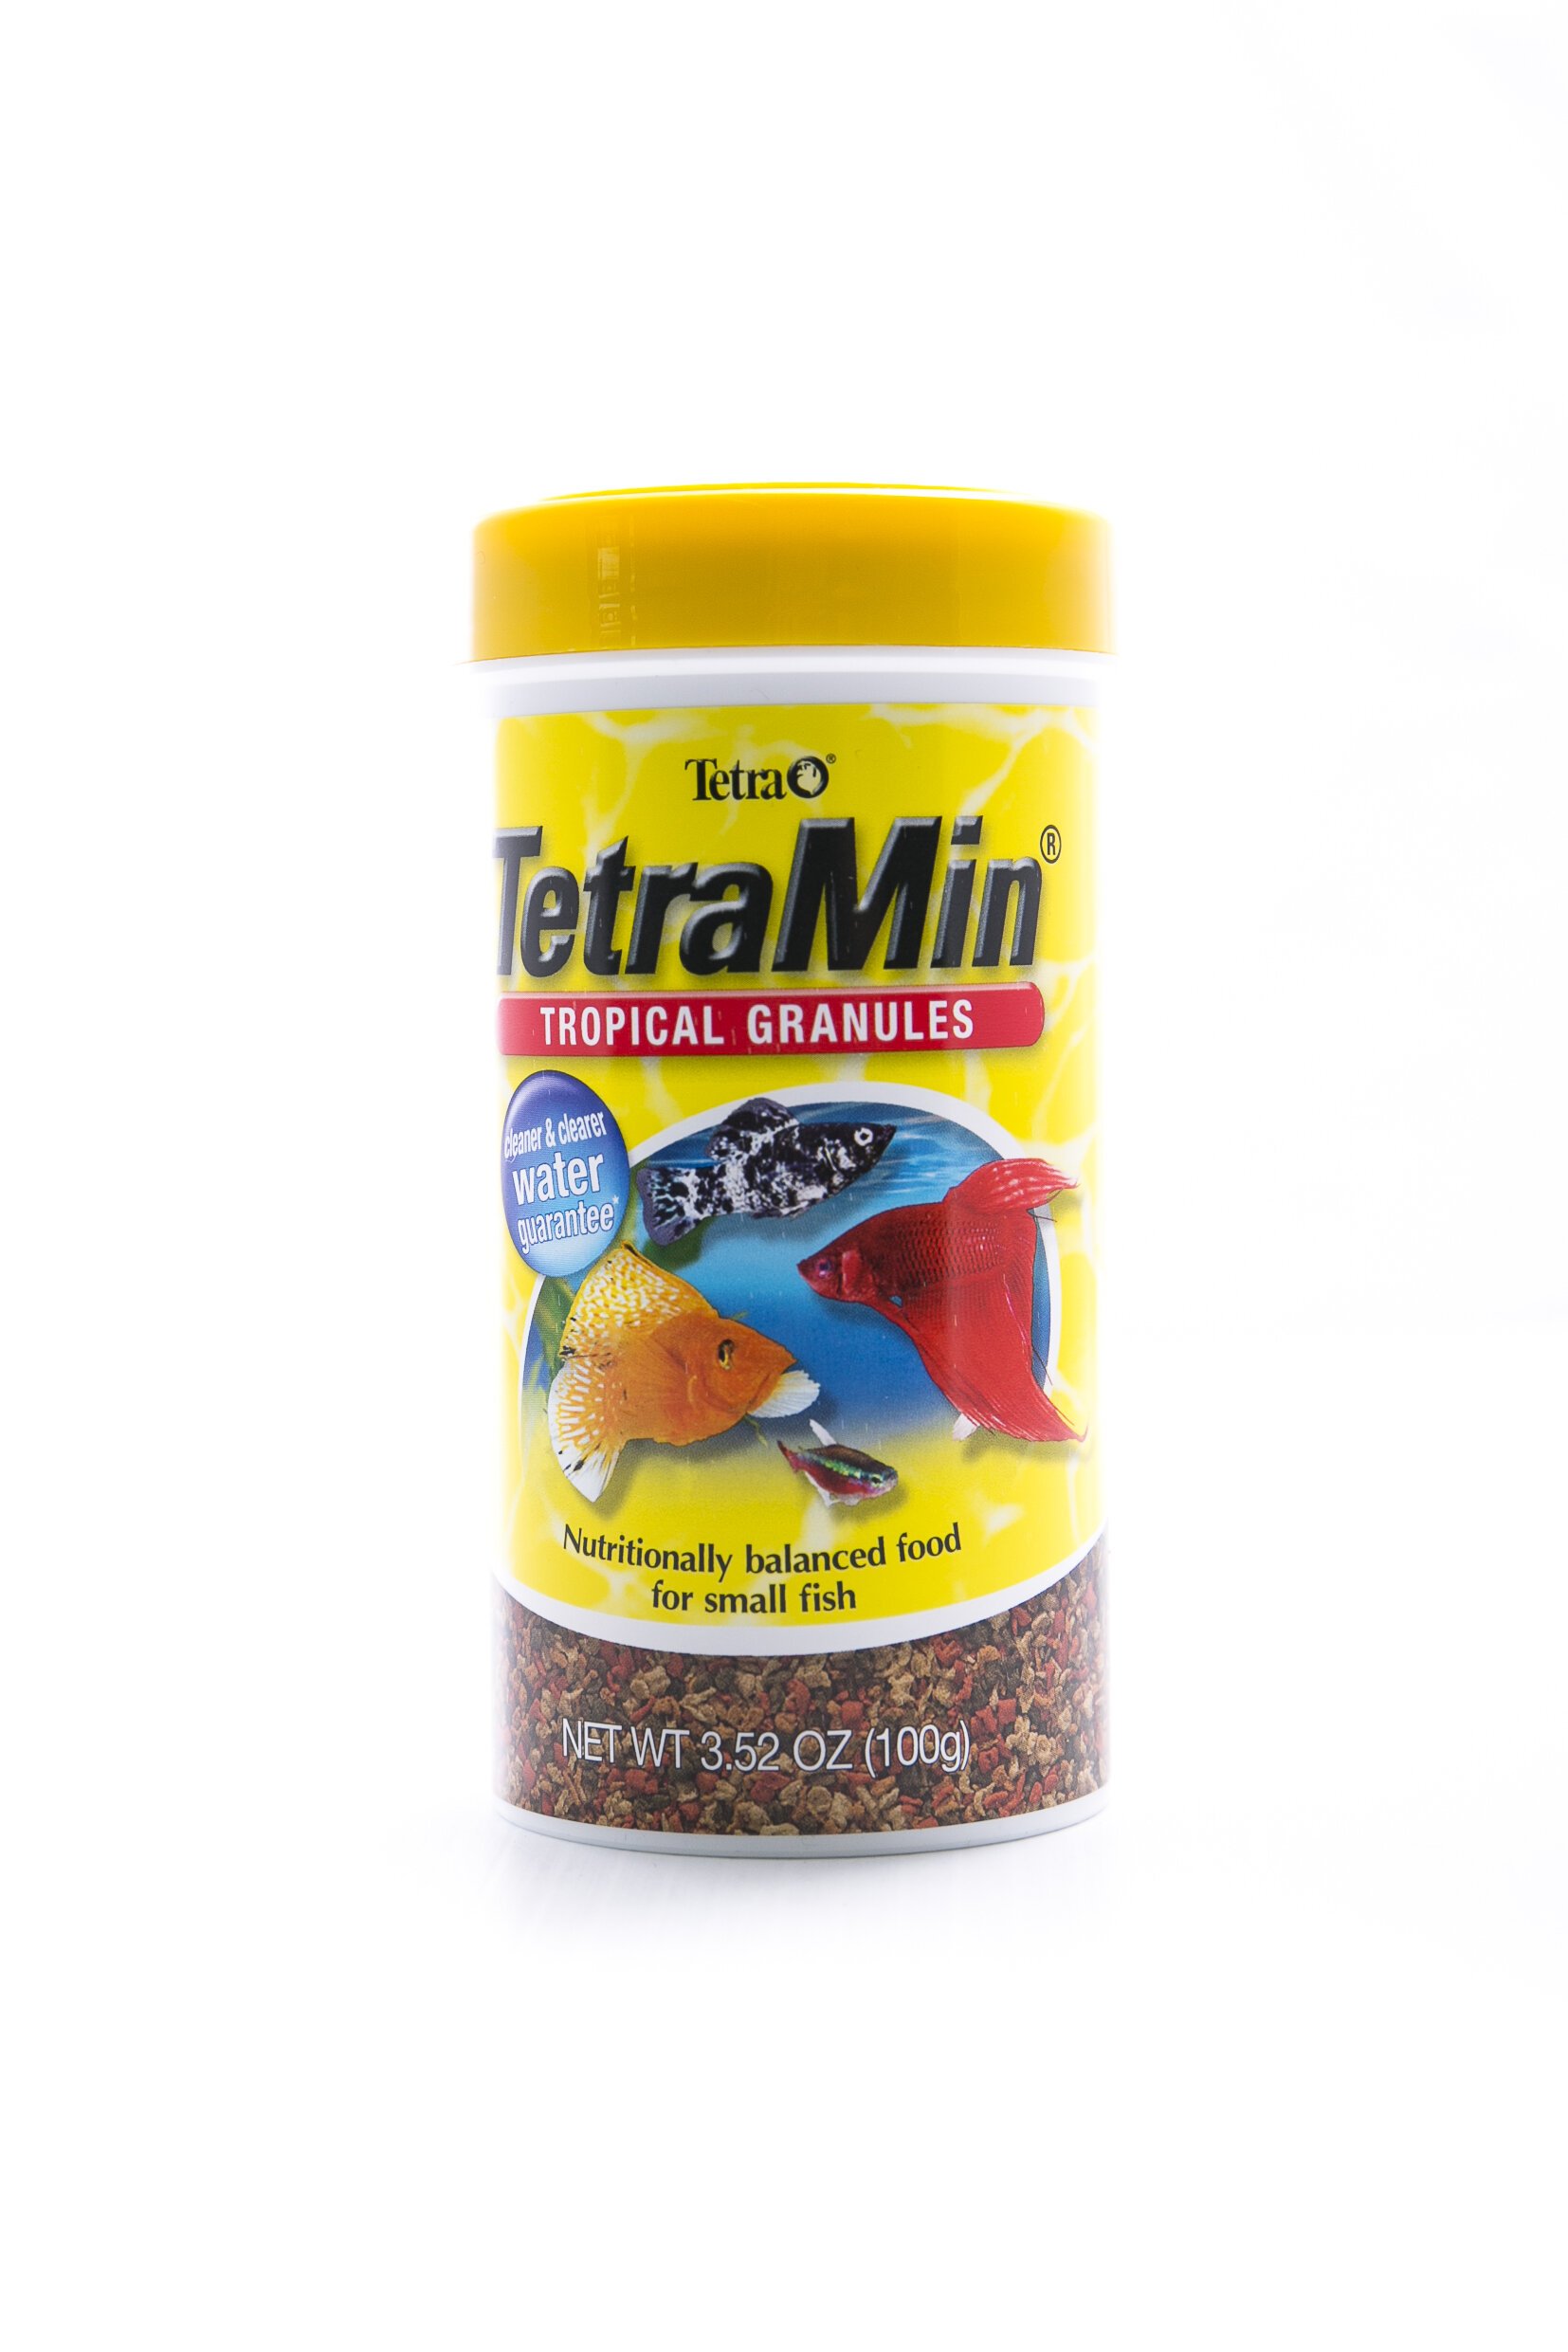 TetraMin Tropical Granules - Fish-Food-Pellets : Pet Shop Auckland –   - Tetra